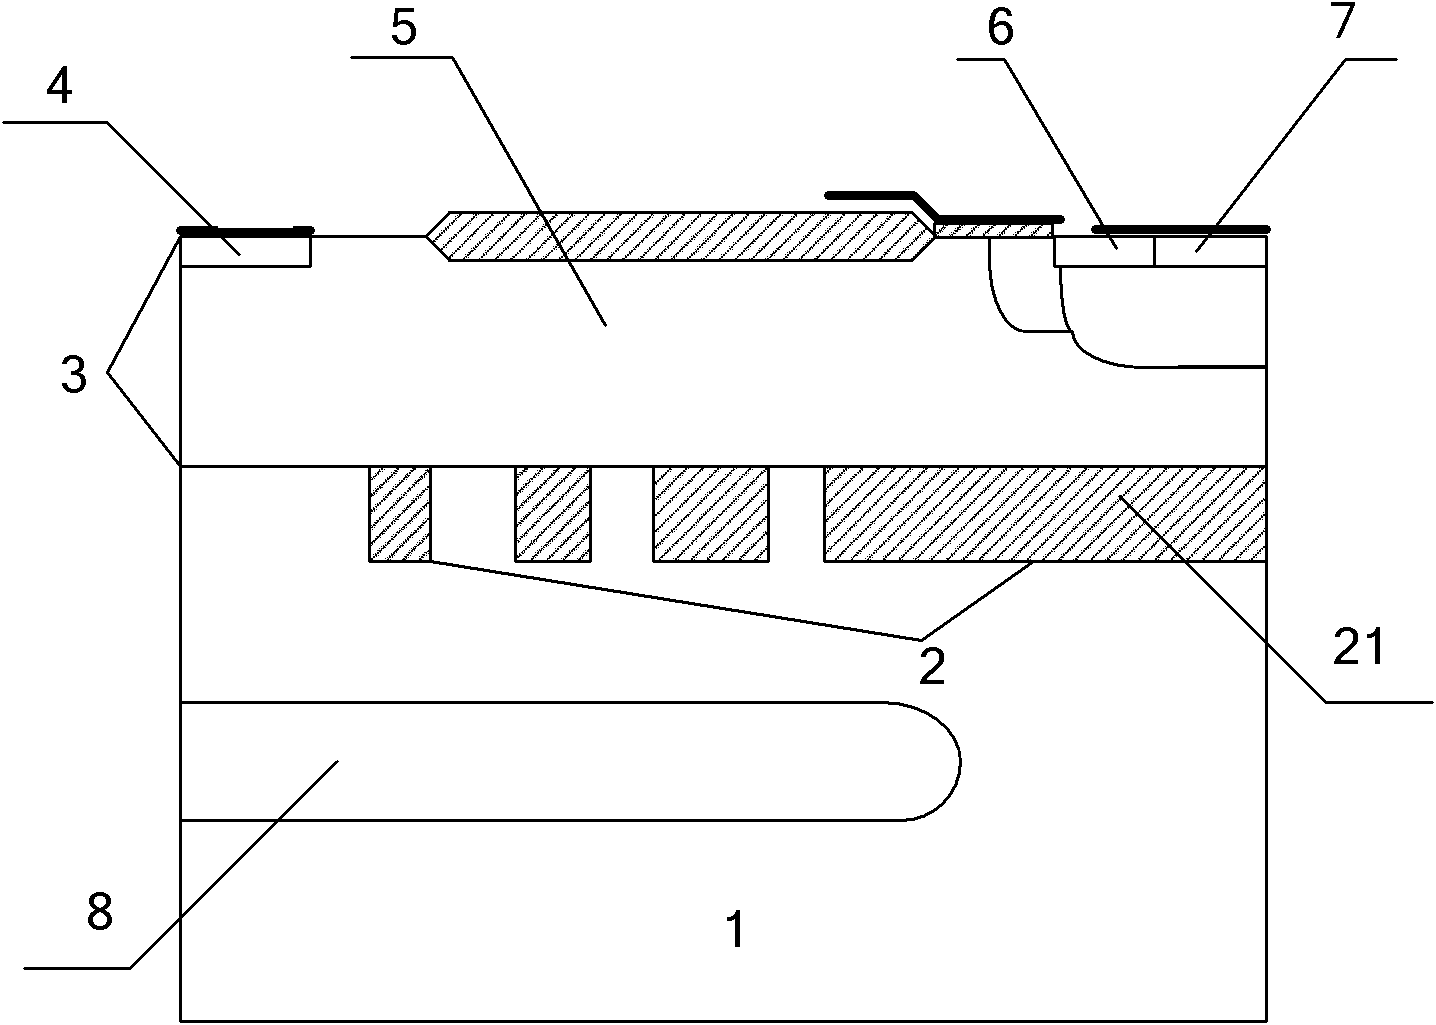 Partial SOI (silicon on insulator) traverse double-diffused device